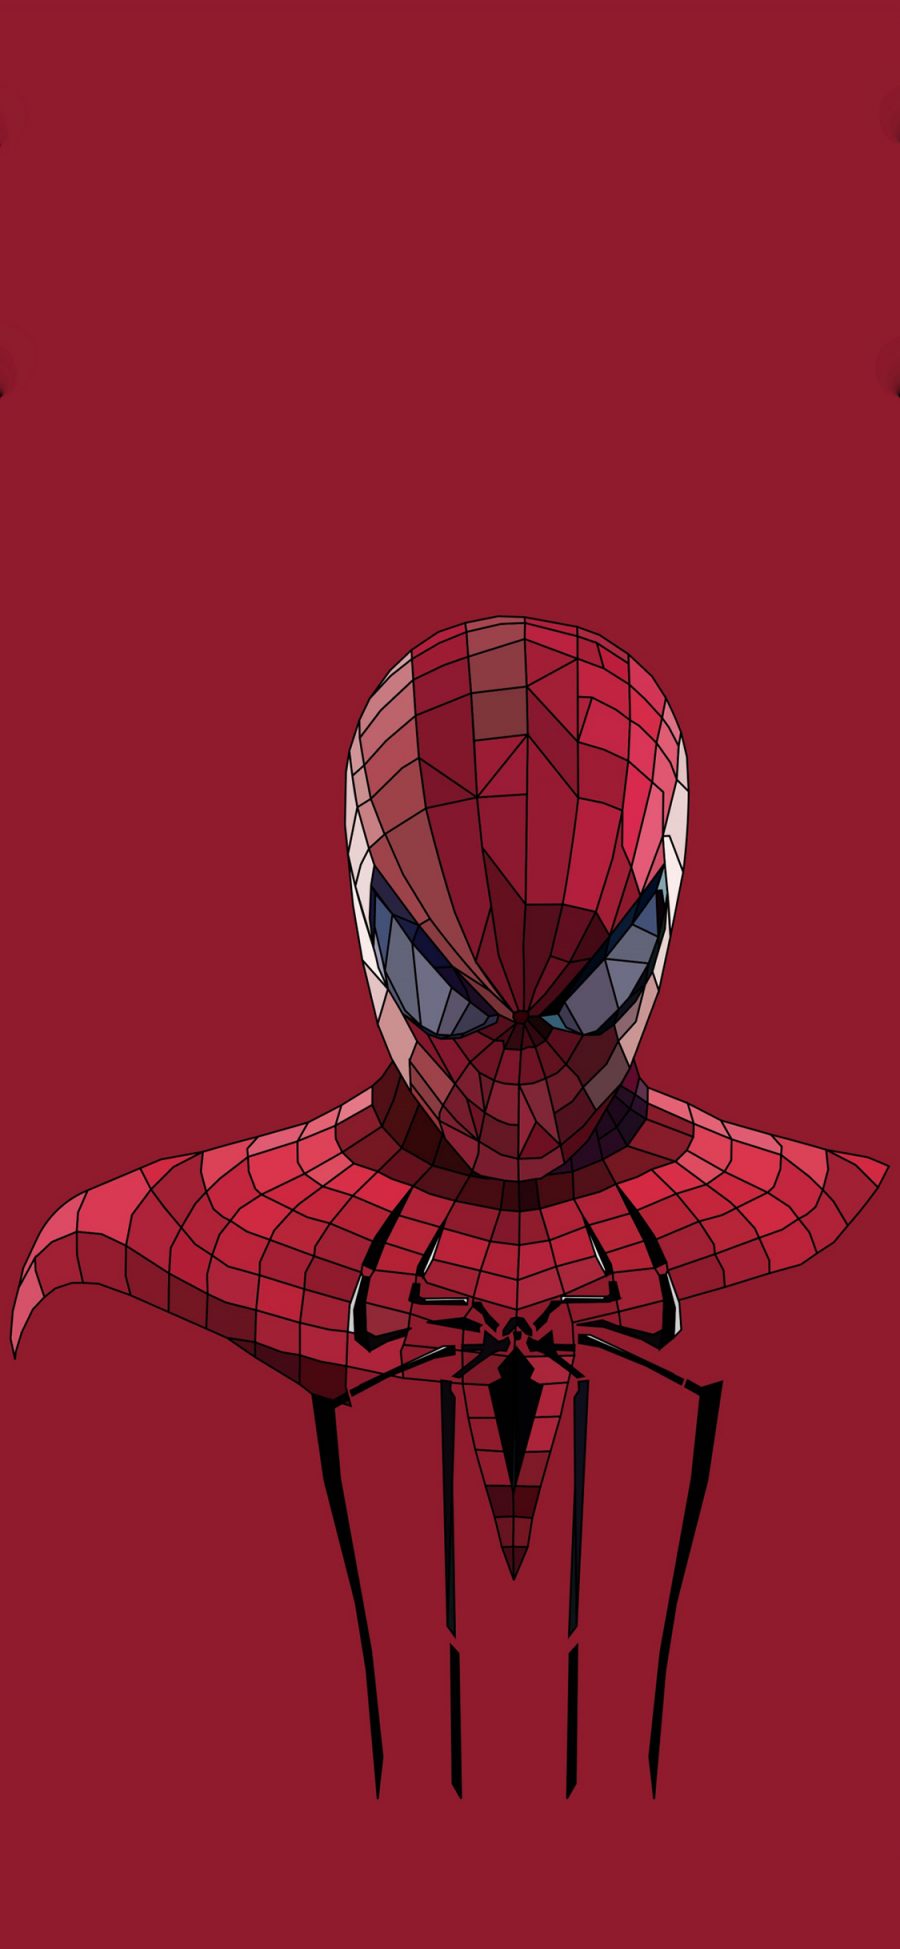 [2436×1125]蜘蛛侠 红色 漫威 超级英雄 苹果手机动漫壁纸图片